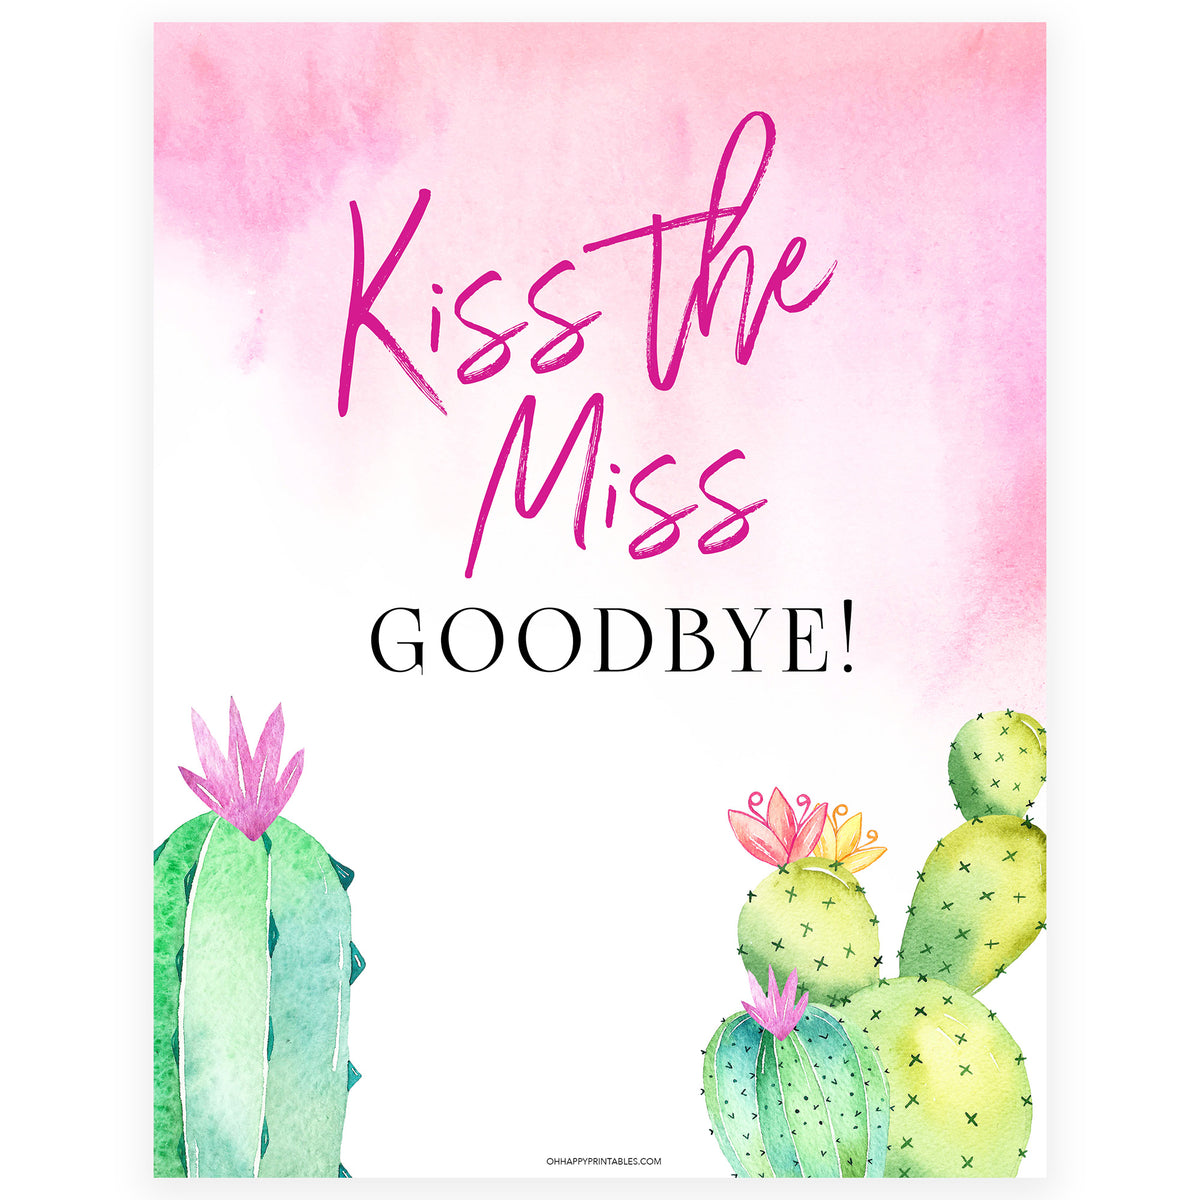 Kiss the Miss Goodbye Print - Fiesta